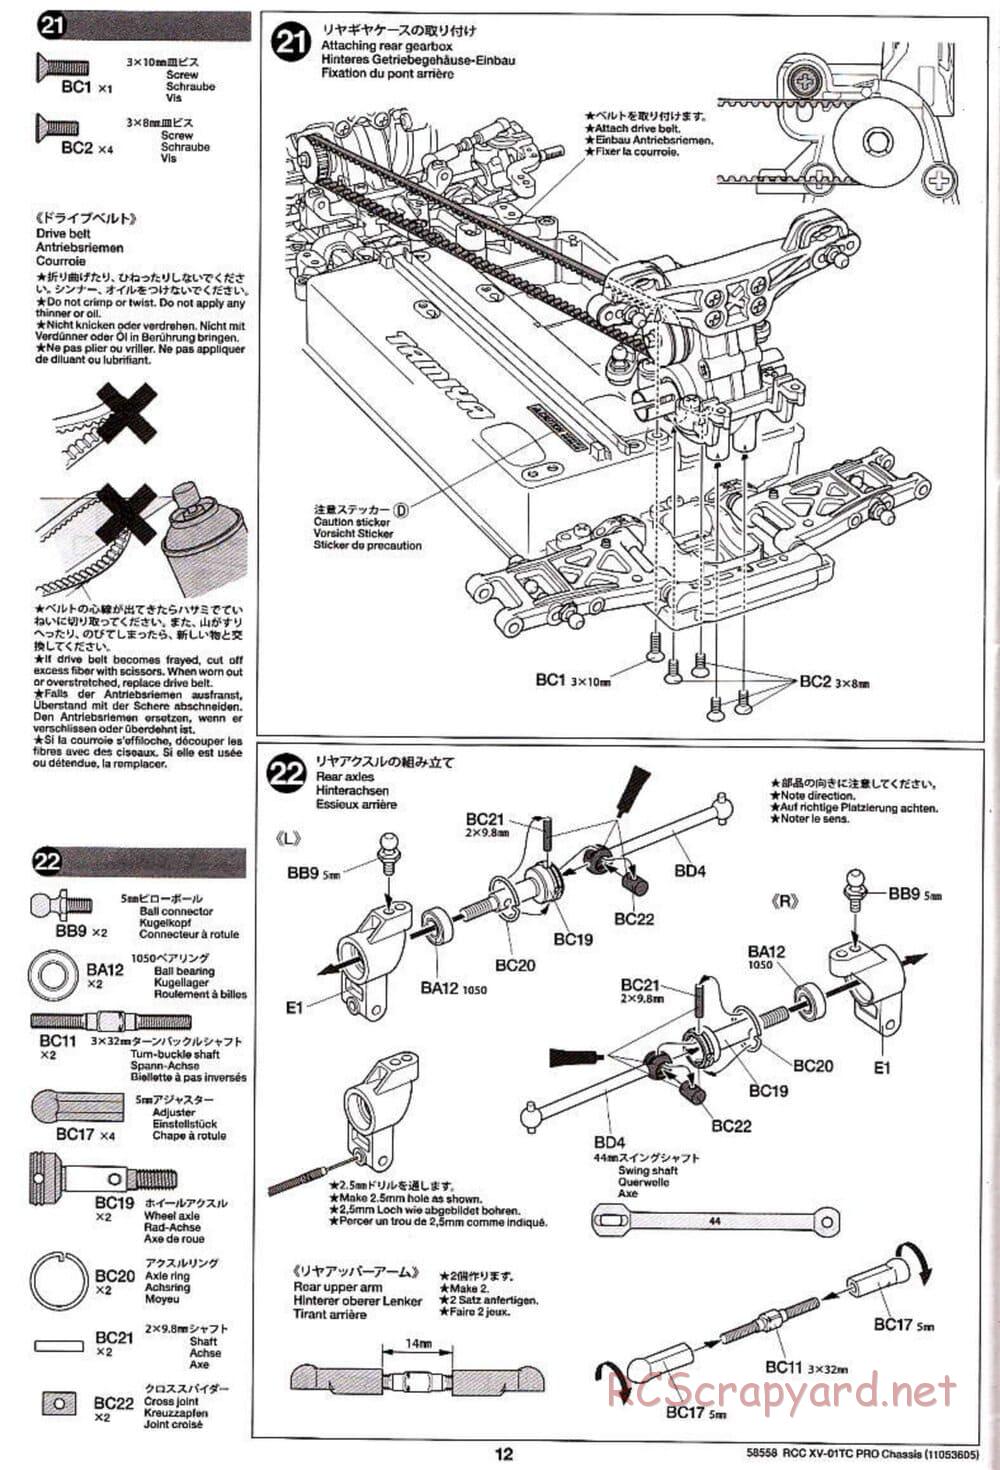 Tamiya - XV-01TC Chassis - Manual - Page 12